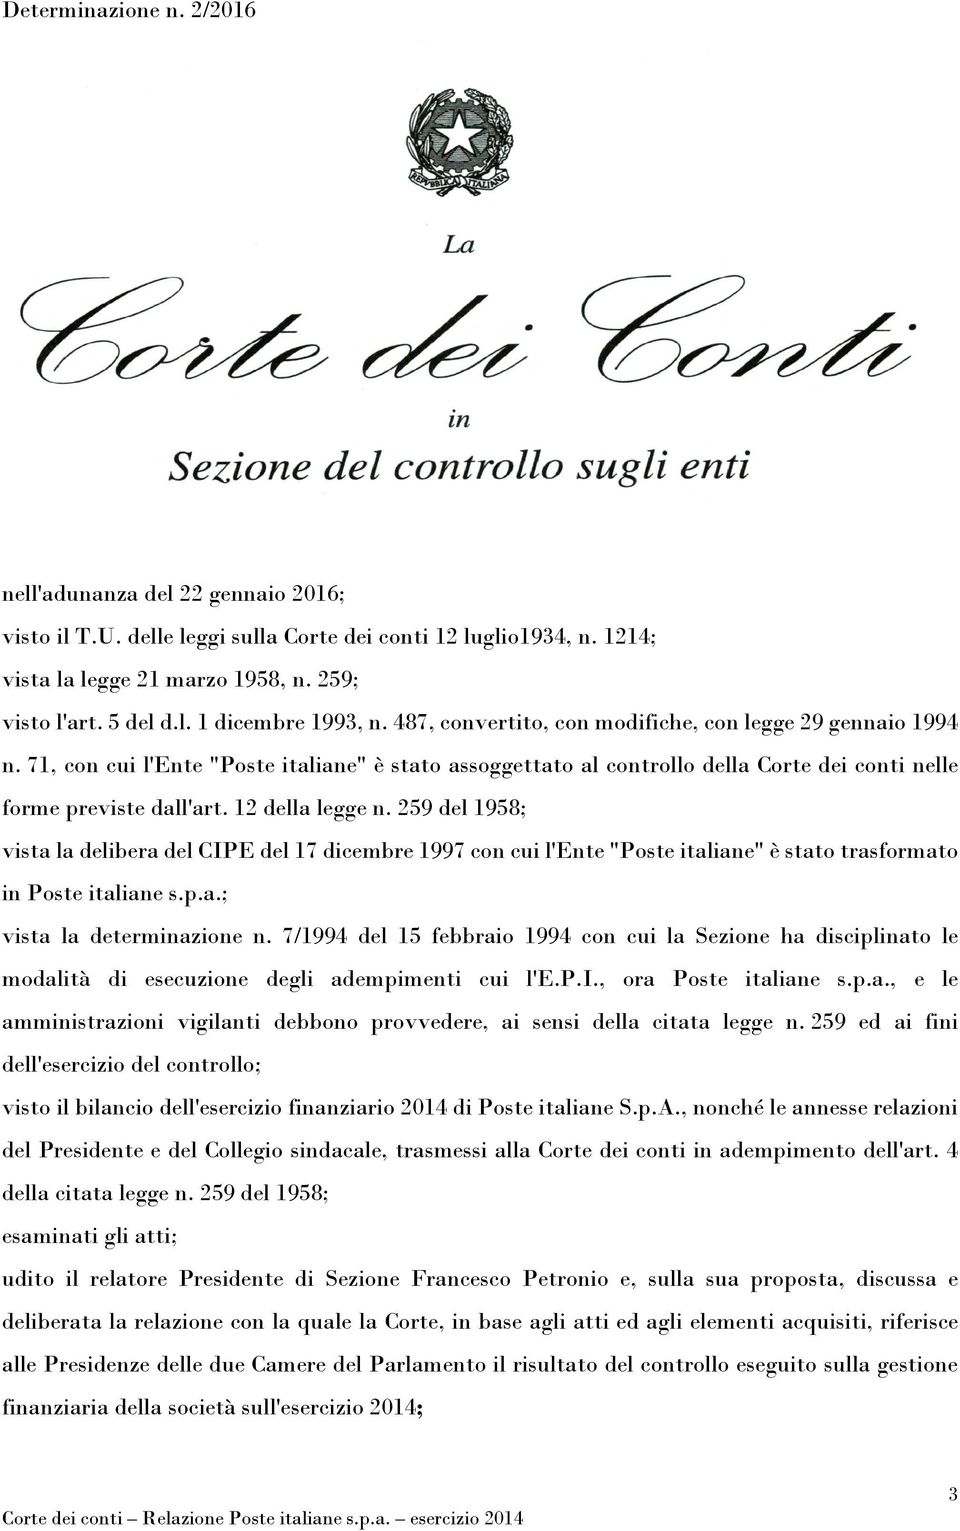 12 della legge n. 259 del 1958; vista la delibera del CIPE del 17 dicembre 1997 con cui l'ente "Poste italiane" è stato trasformato in Poste italiane s.p.a.; vista la determinazione n.